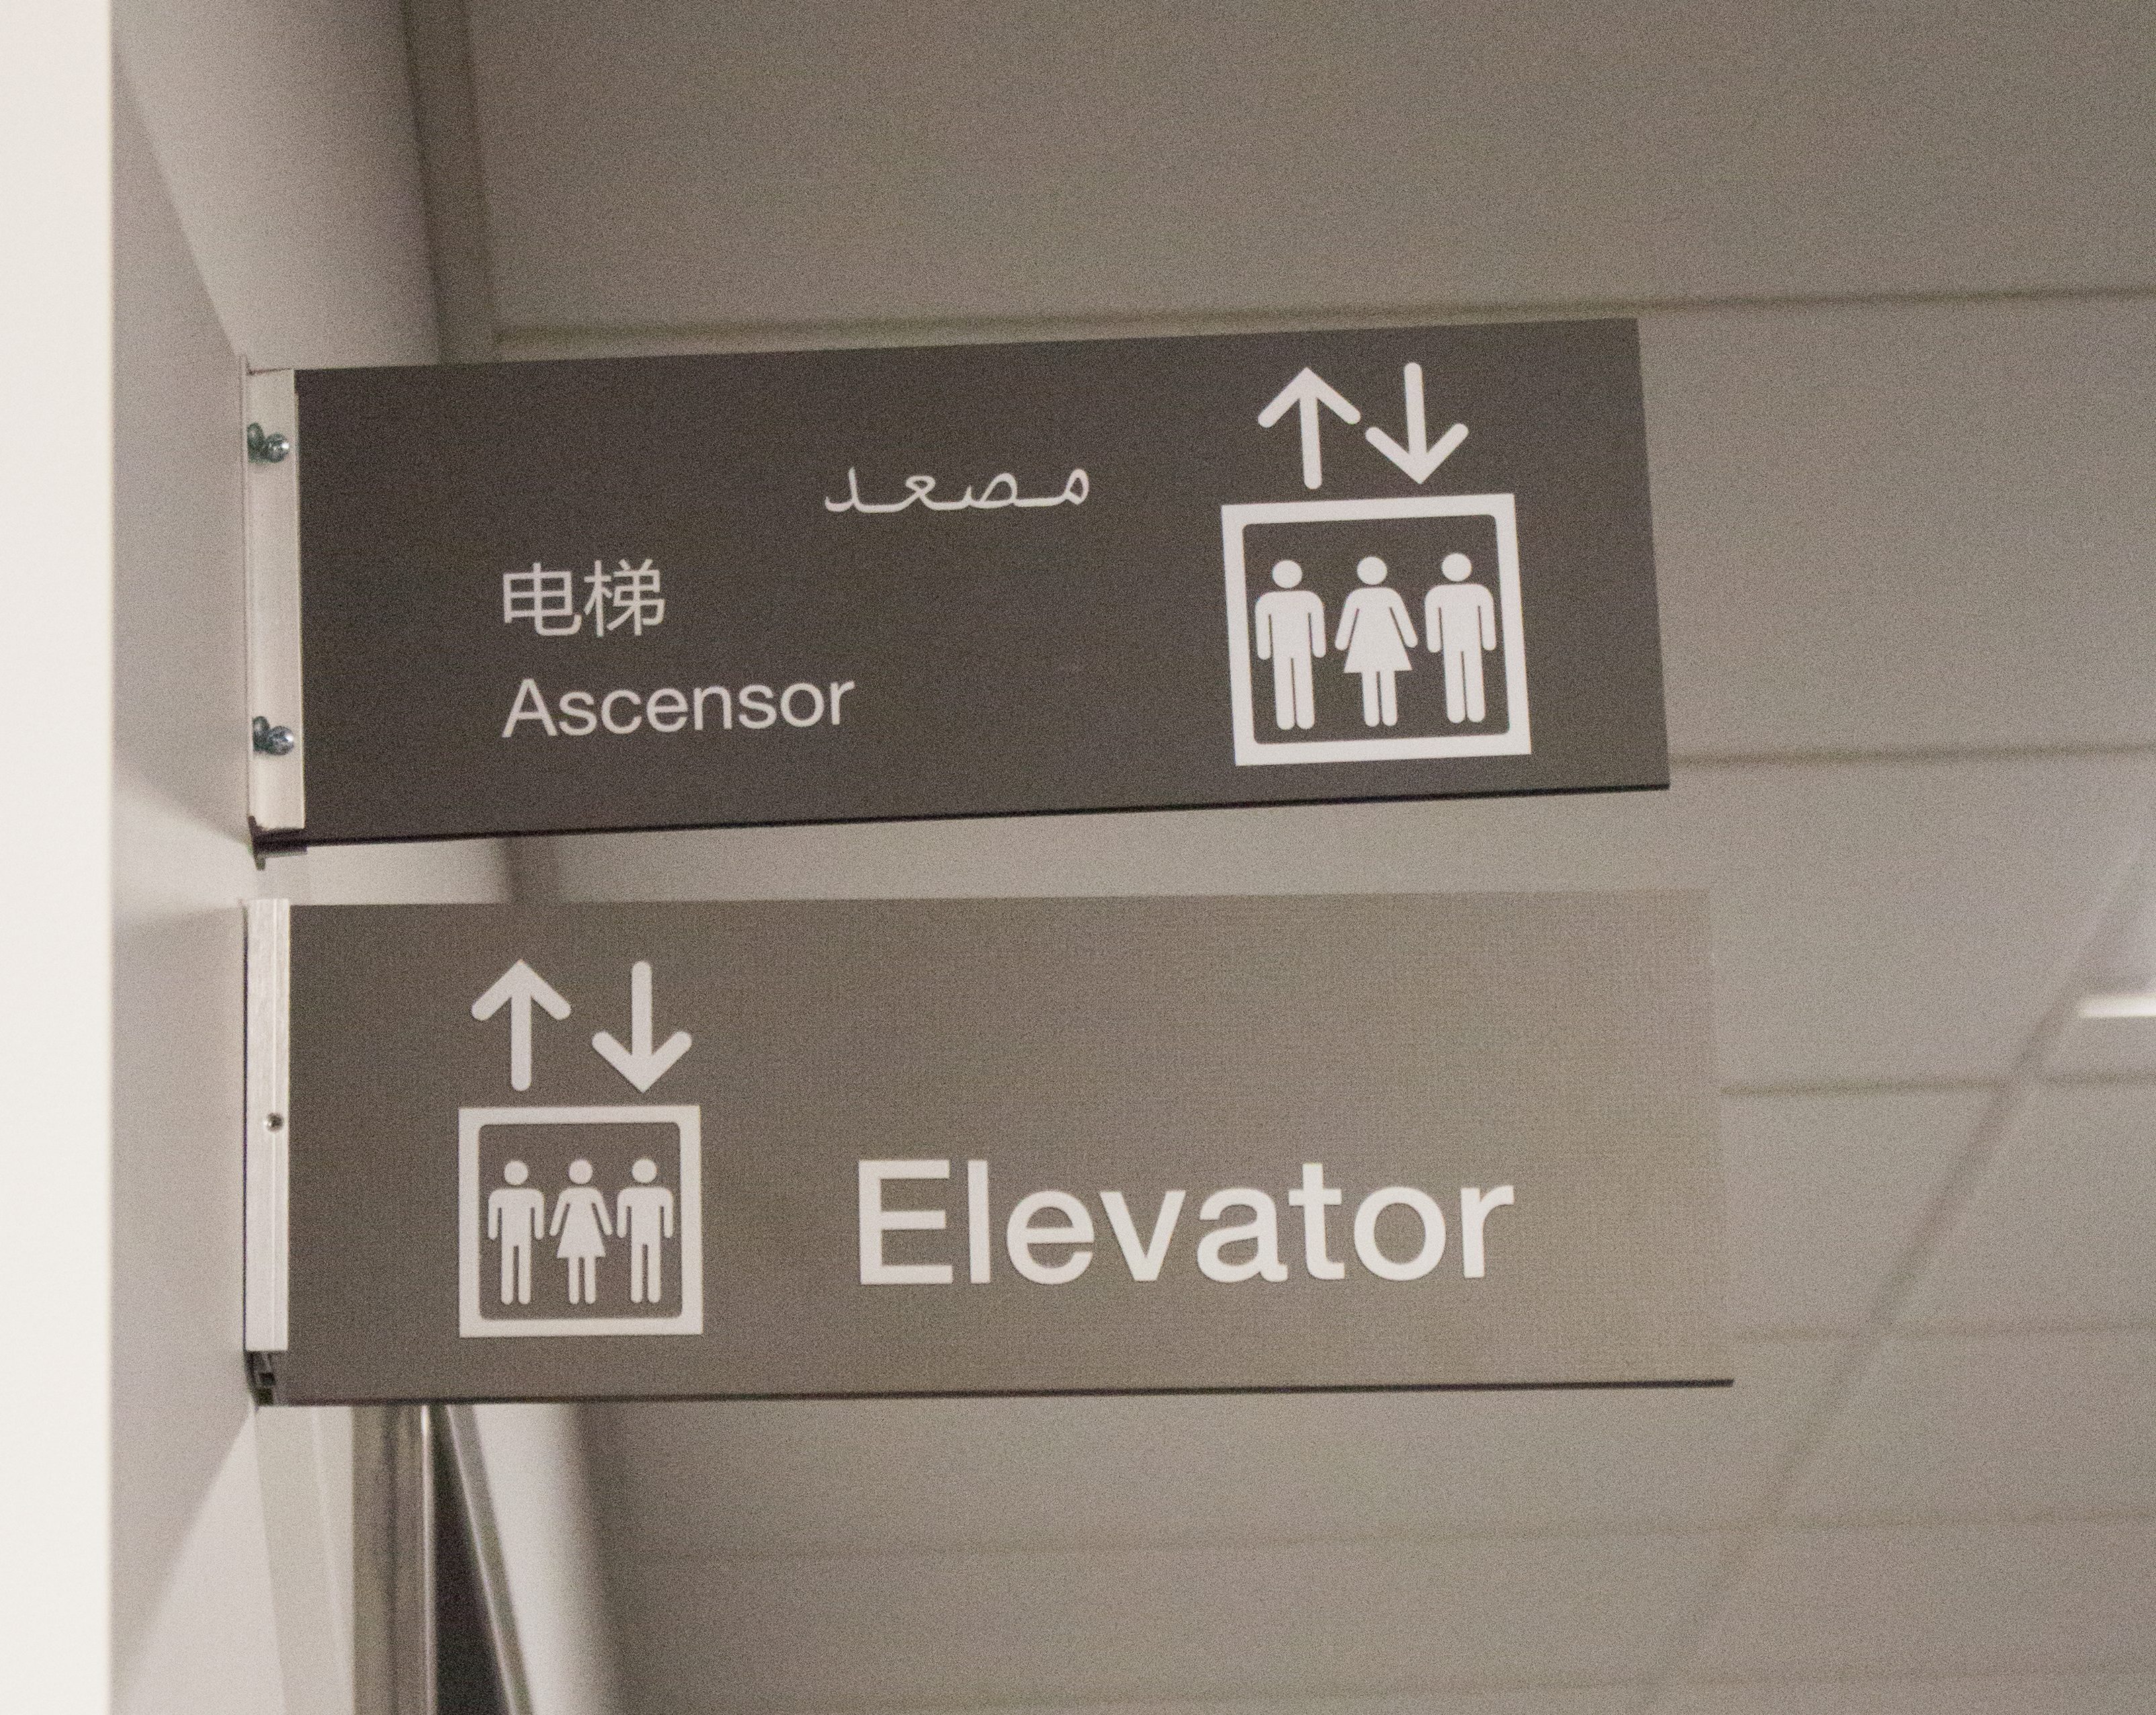 RWEC unveils multilingual signage